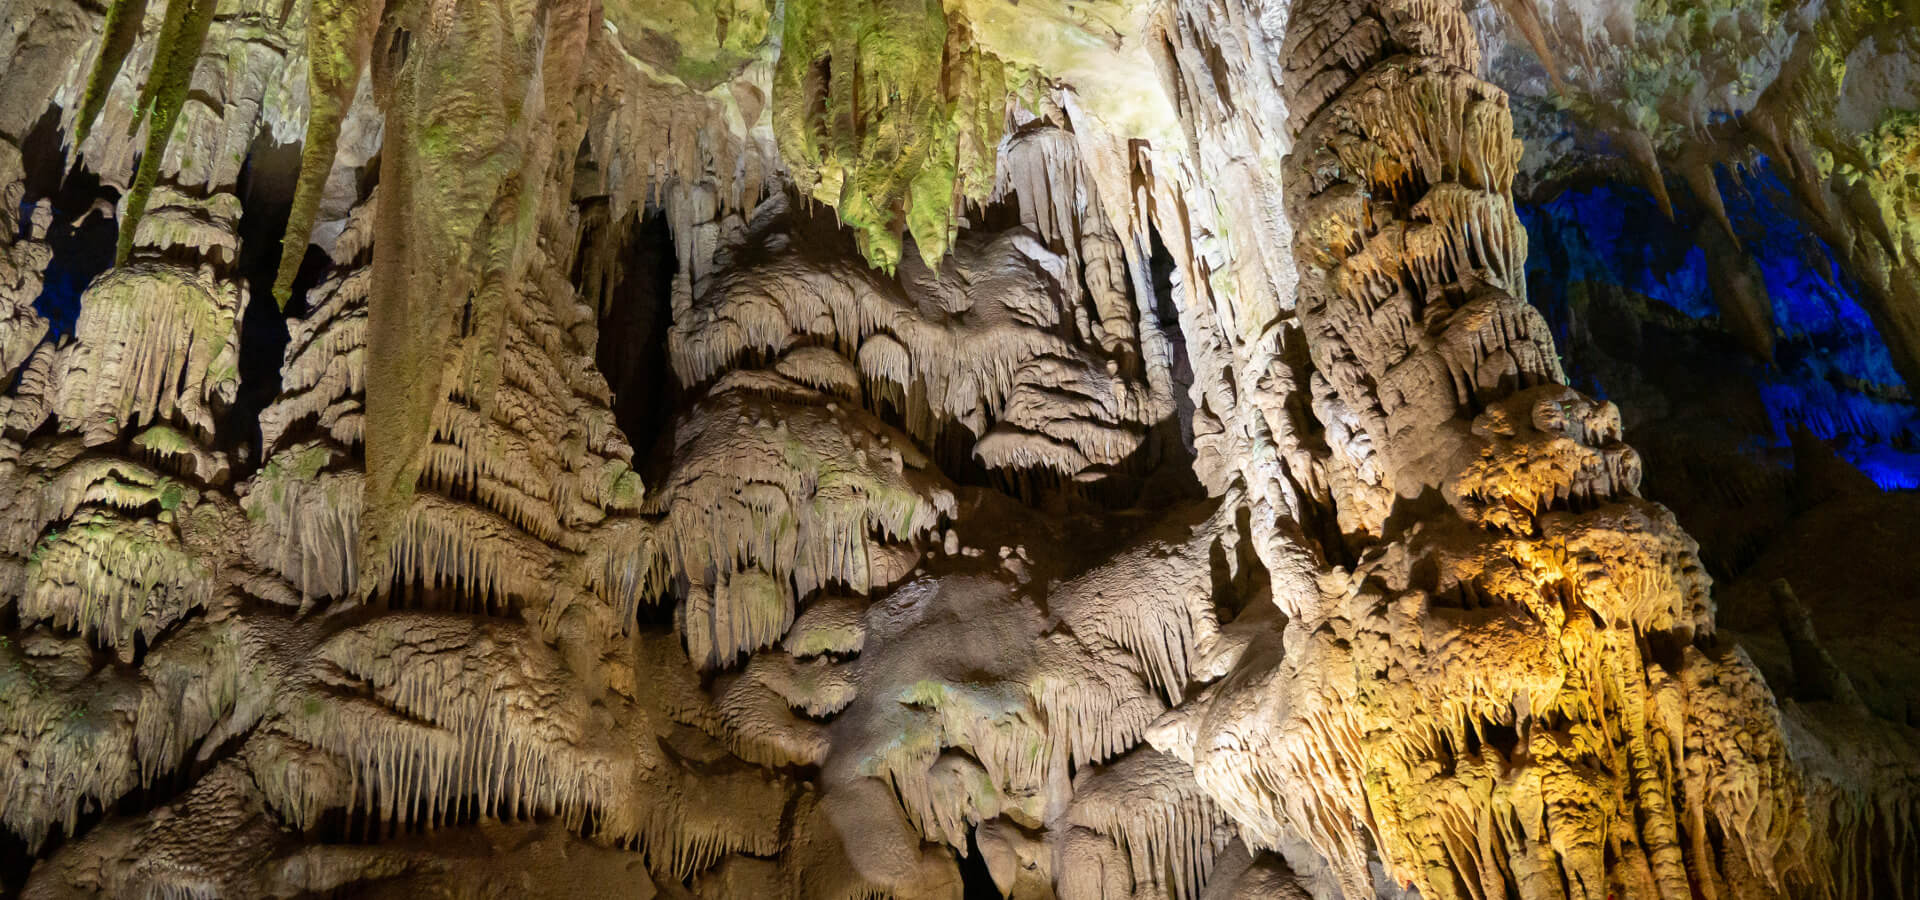 Jaskinia PROMETEUSZA - podziemna atrakcja w okolicach Kutaisi w Gruzji